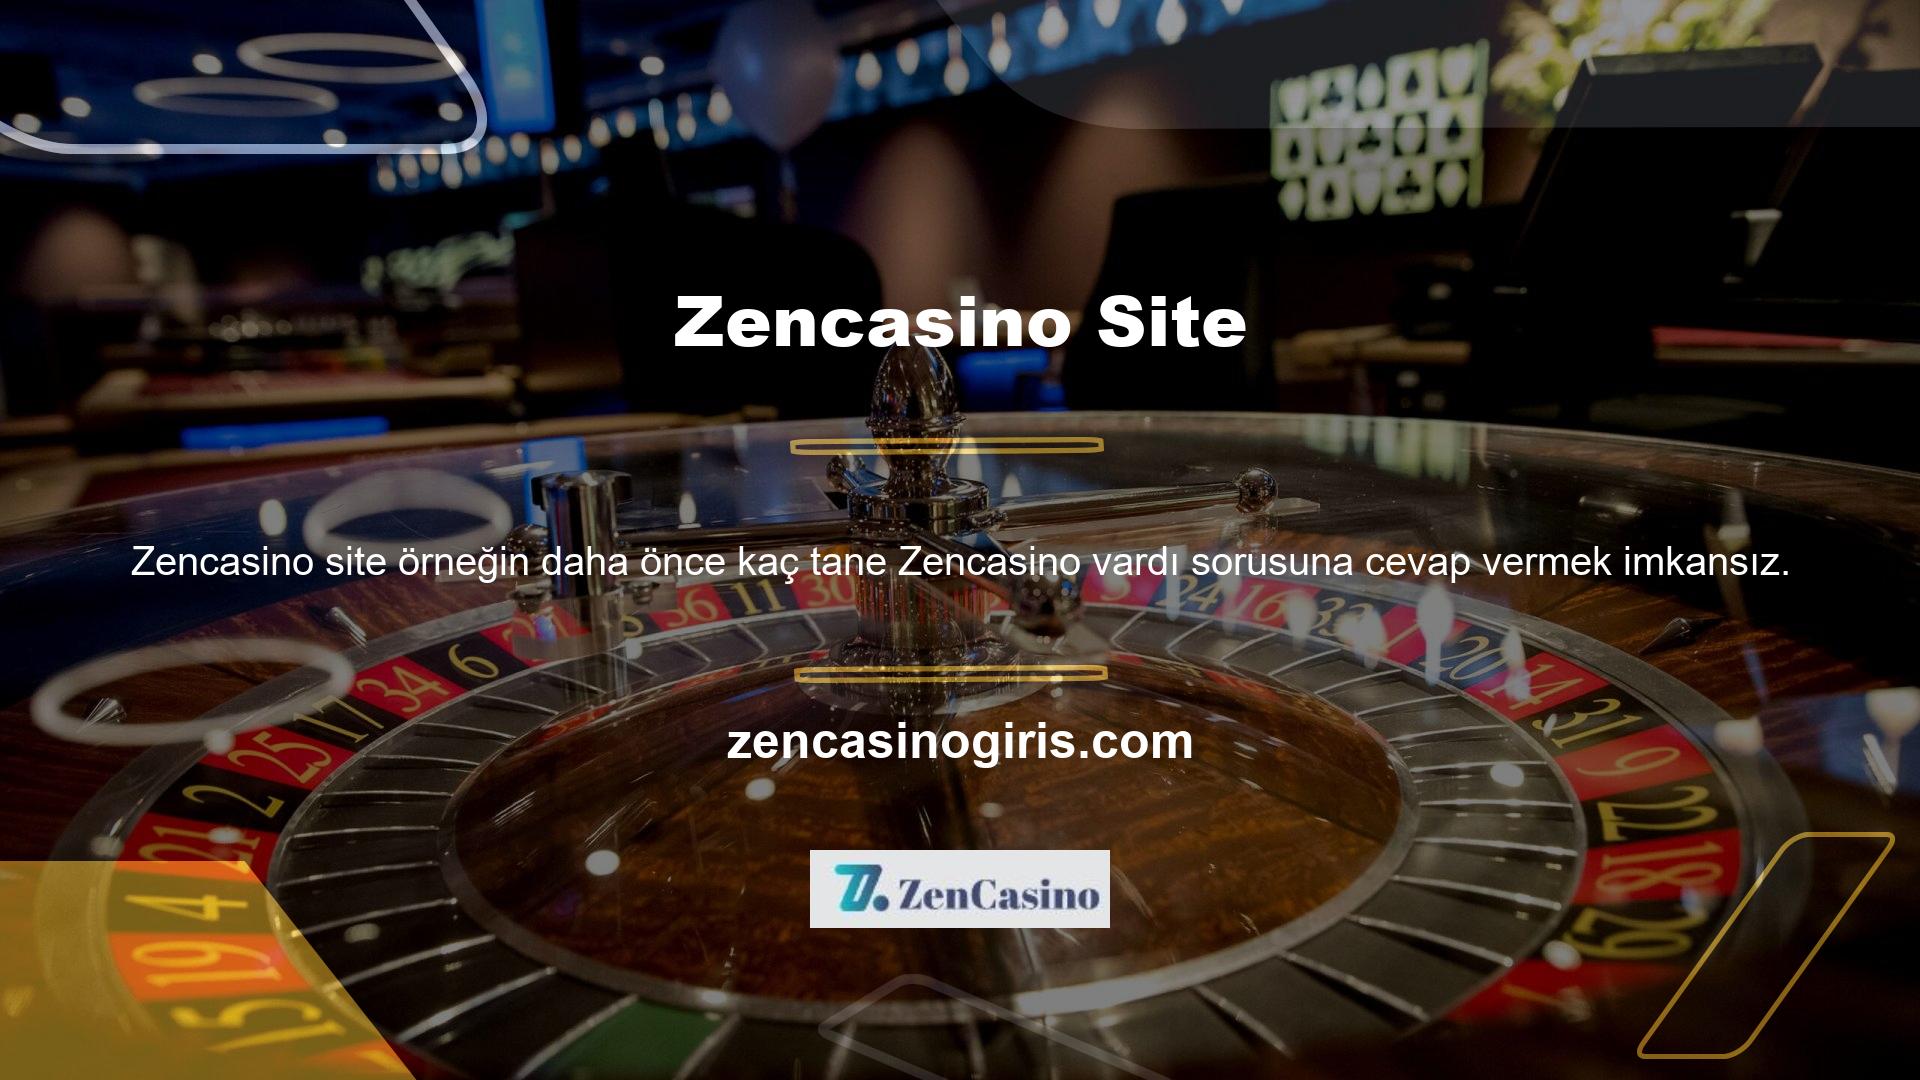 Şu anda kullanımda olan yeni giriş adres Zencasino, aynı hizmet sağlayıcı şirketle aynı yatırım koşulları, bonuslar, para çekme yöntemleri, müşteri hizmetleri ve diğer tüm detaylarla hizmetlerini sunmaya devam edecektir